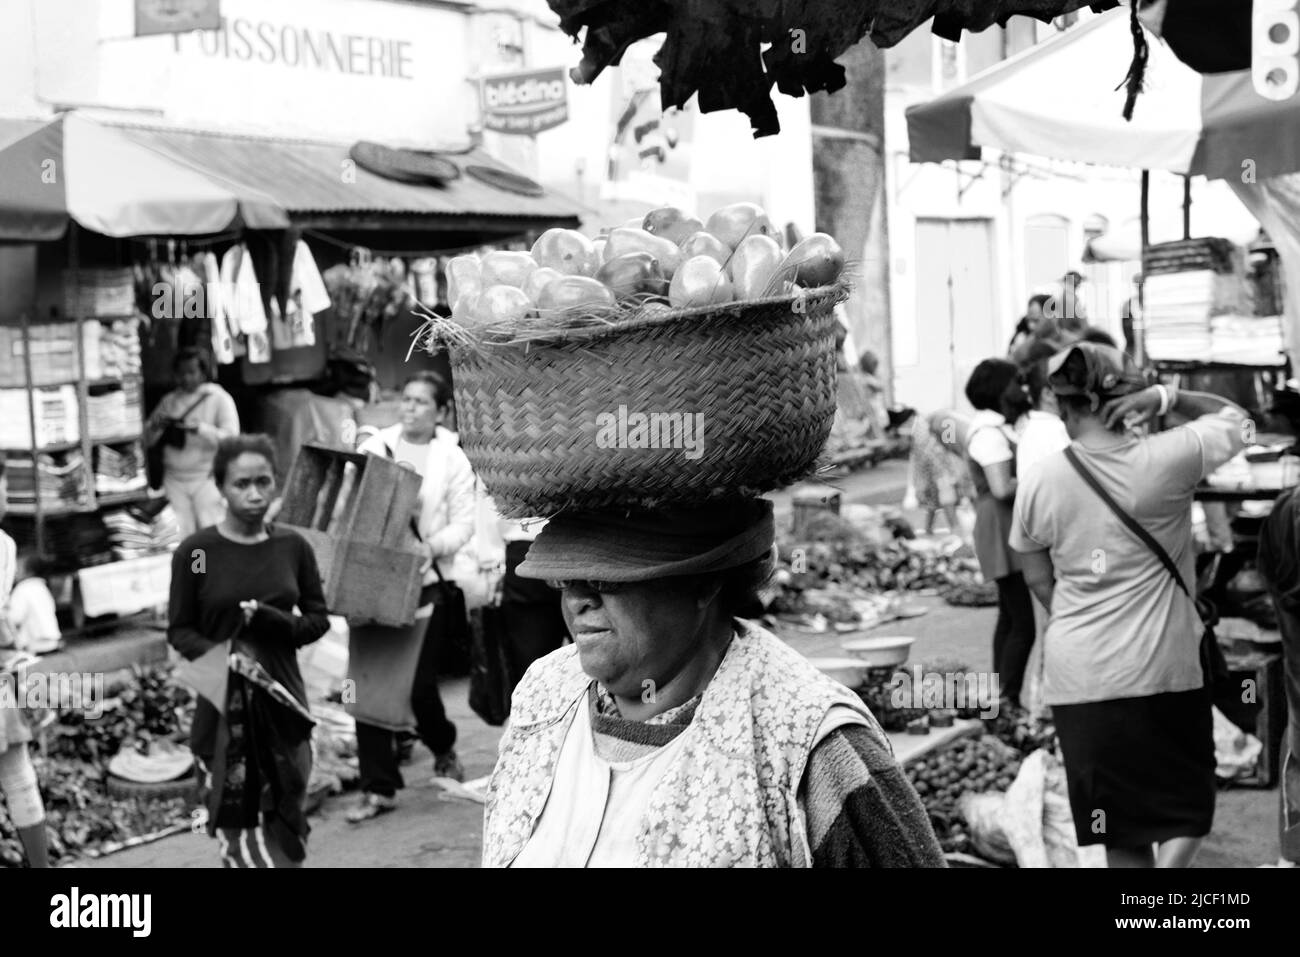 Vibrant markets in the city center of Antananarivo, Madagascar. Stock Photo